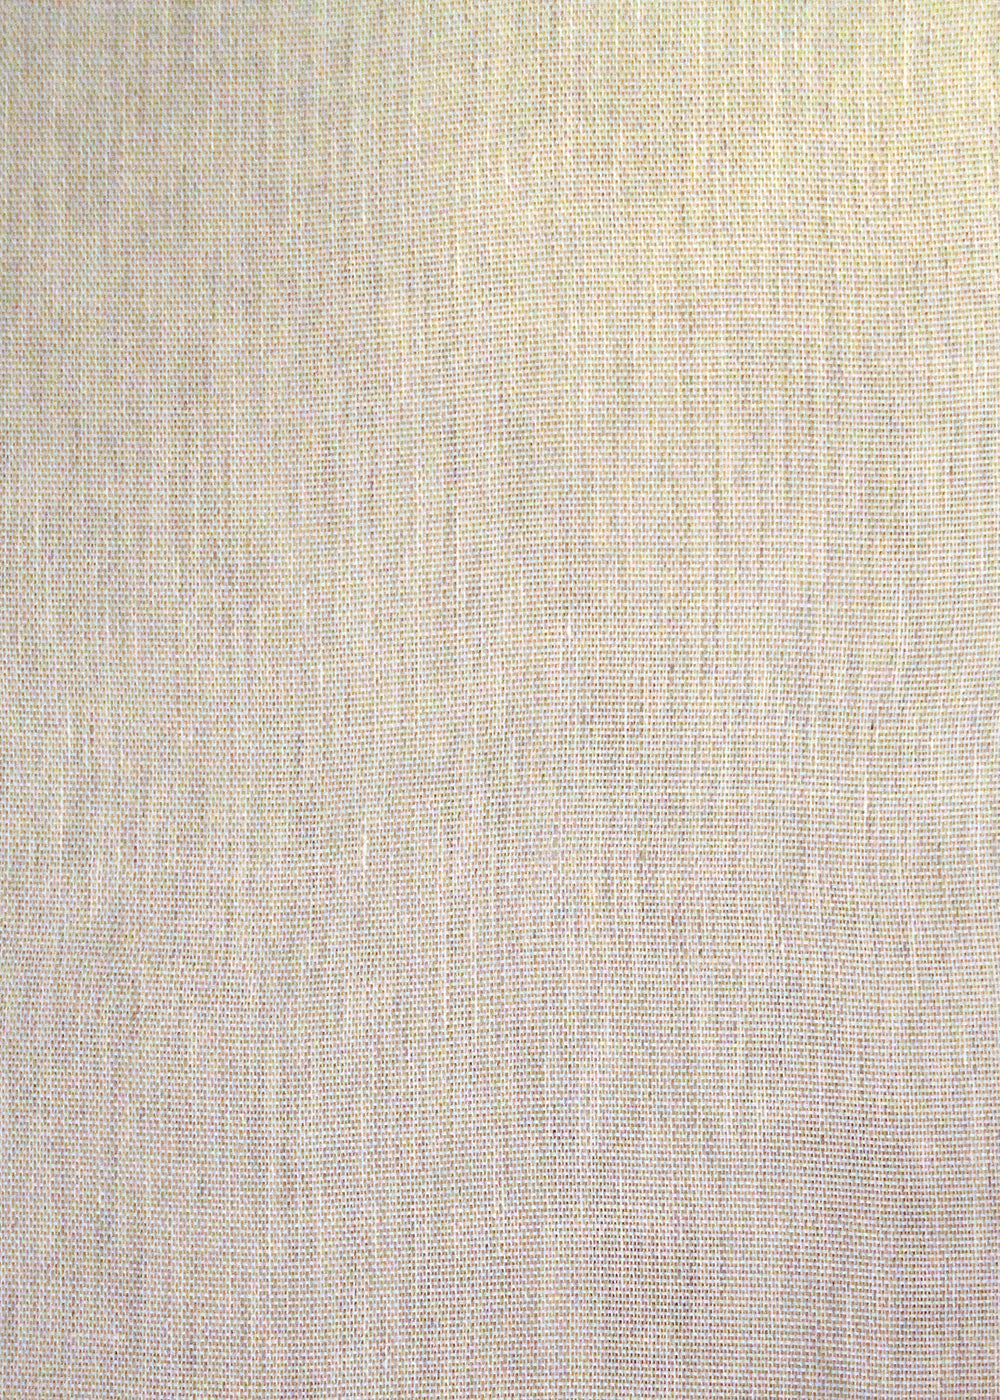 beige linen fabric